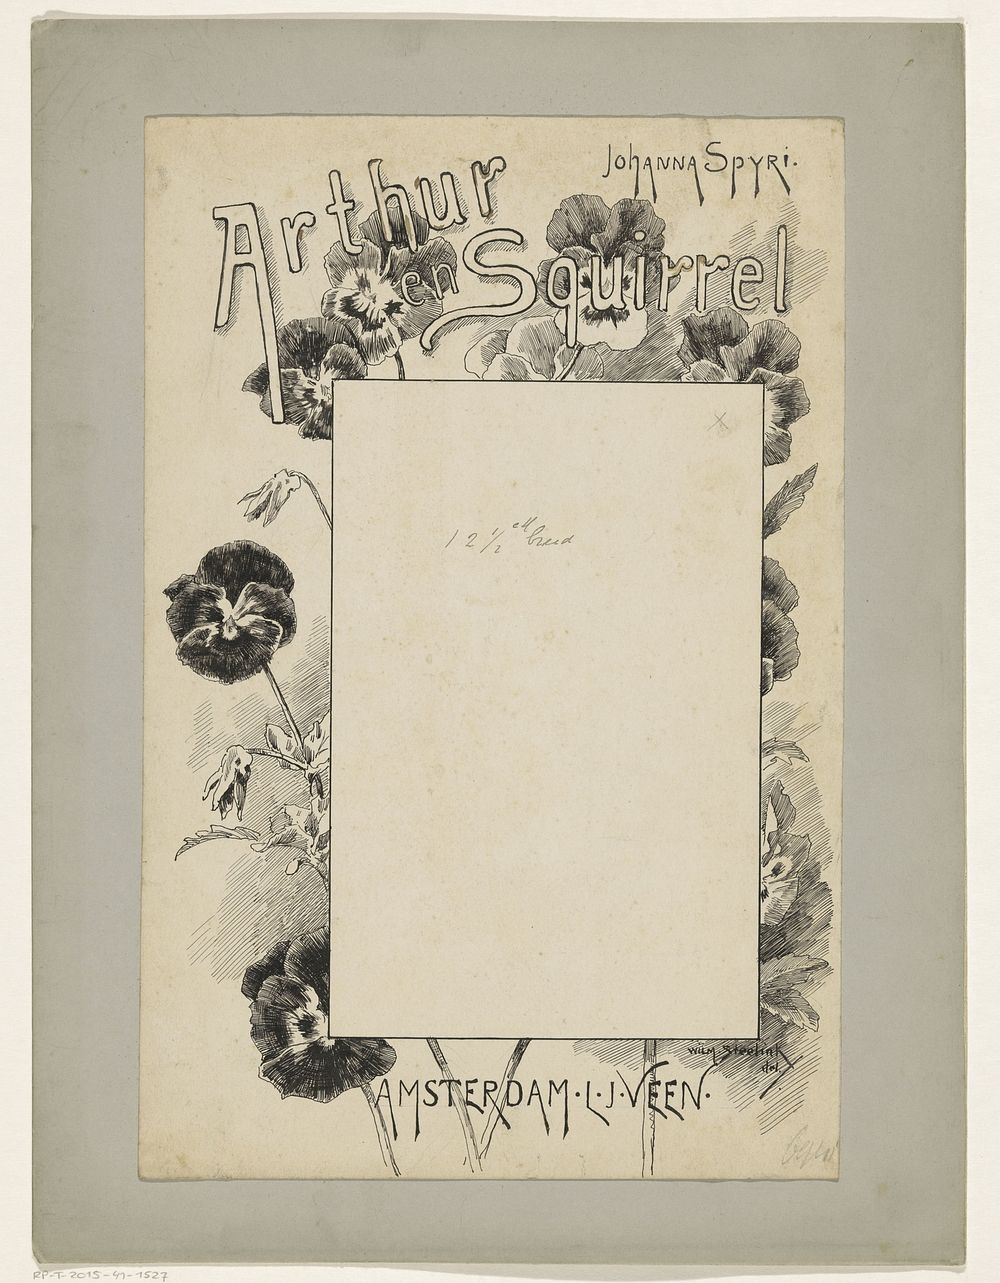 Bandontwerp voor: Johanna Spyri, Arthur en Squirrel, c. 1888-1893 (c. 1888 - c. 1893) by Willem Steelink II